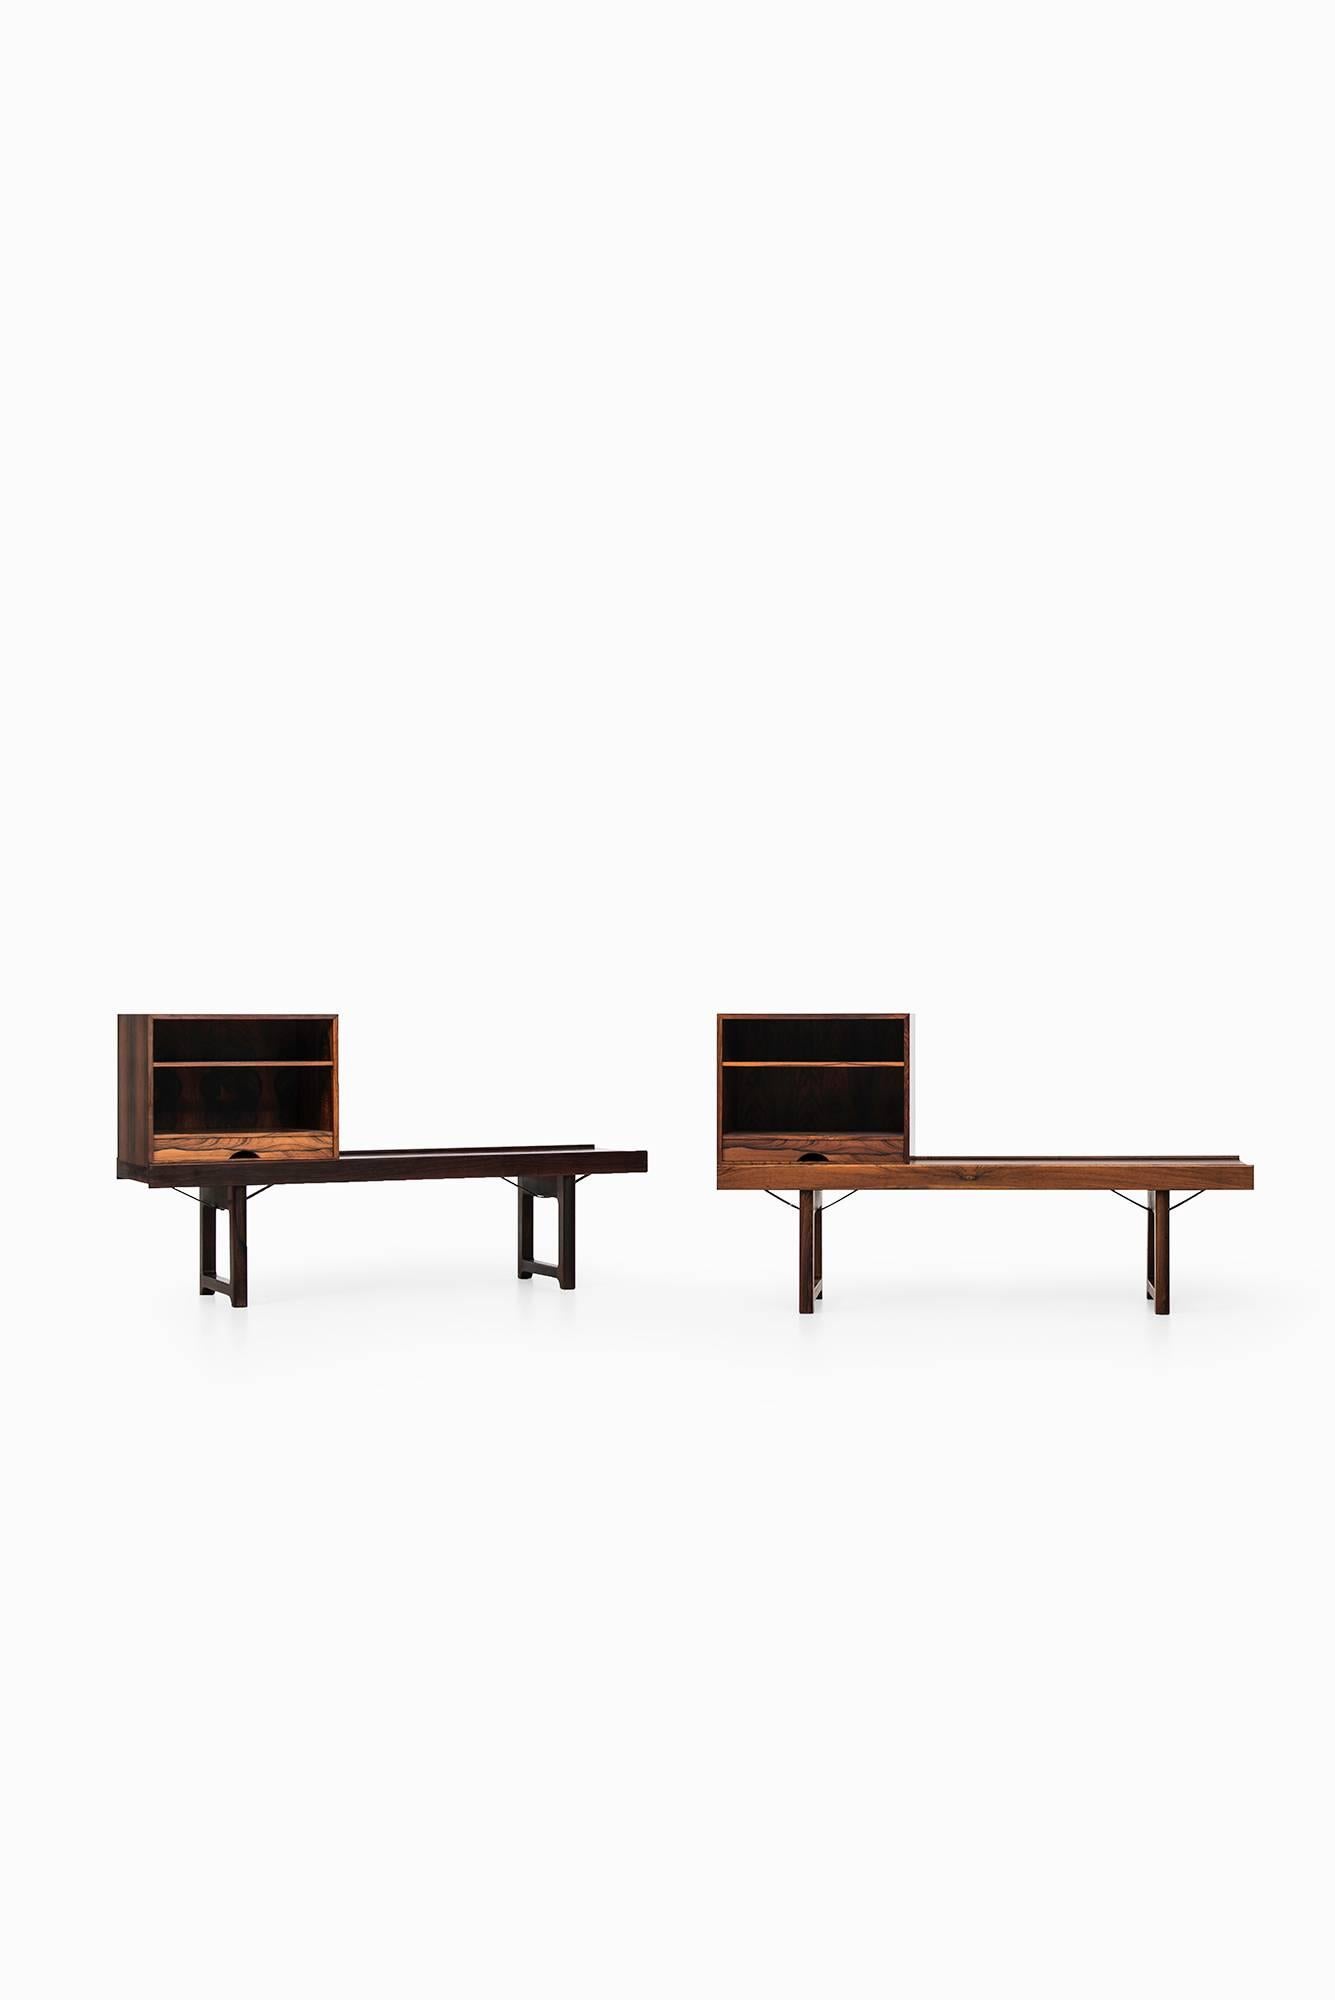 A pair of rosewood side tables model Krobo designed by Torbjørn Afdal. Produced by Mellemstrands møbelfabrik in Norway